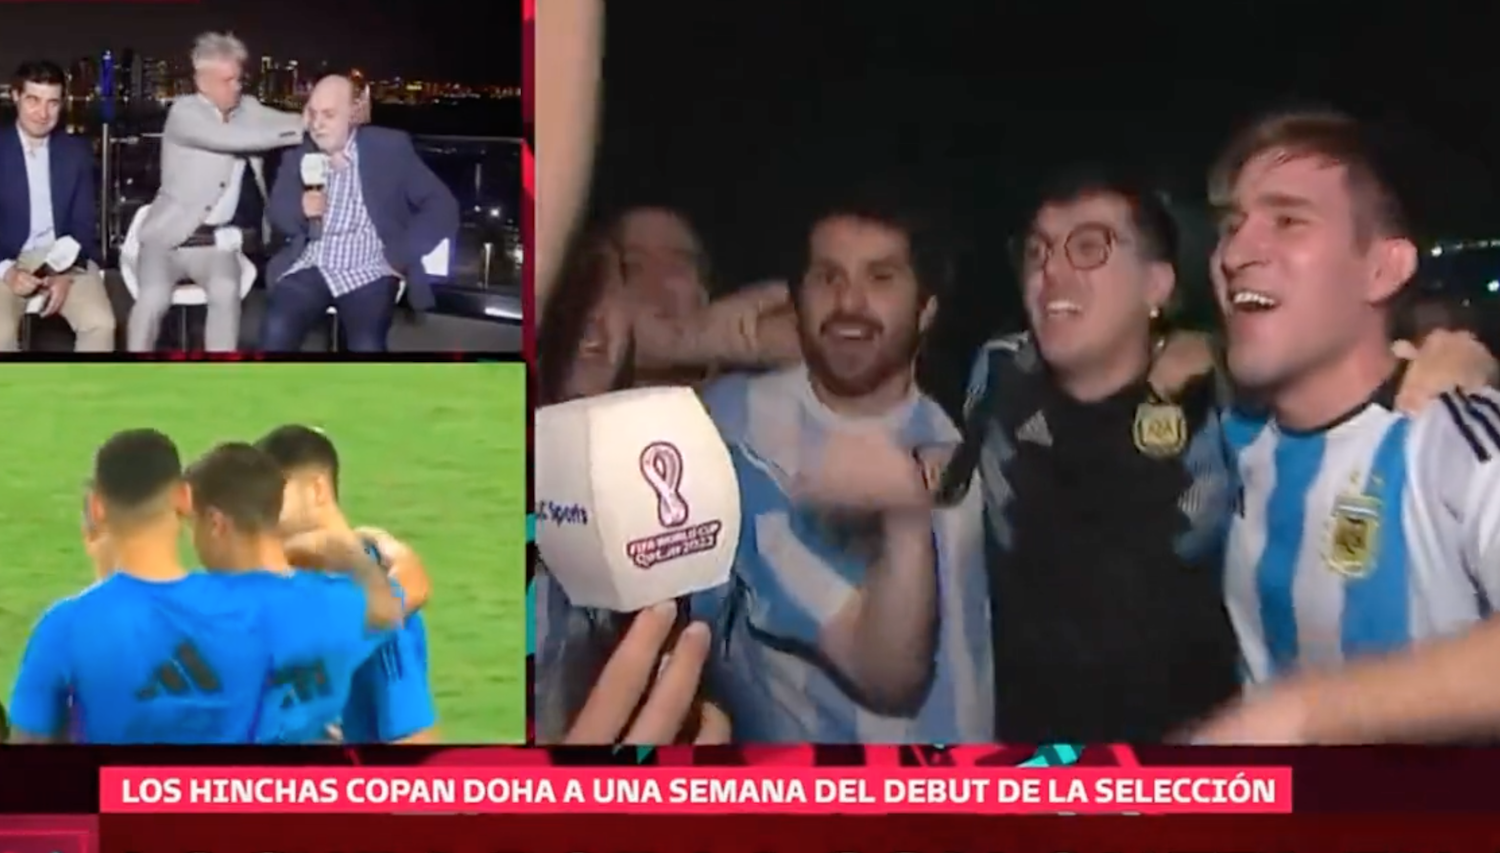 Coupe du monde 2022 : un chant raciste et homophobe de supporters argentins visant Kylian Mbappé scandalise